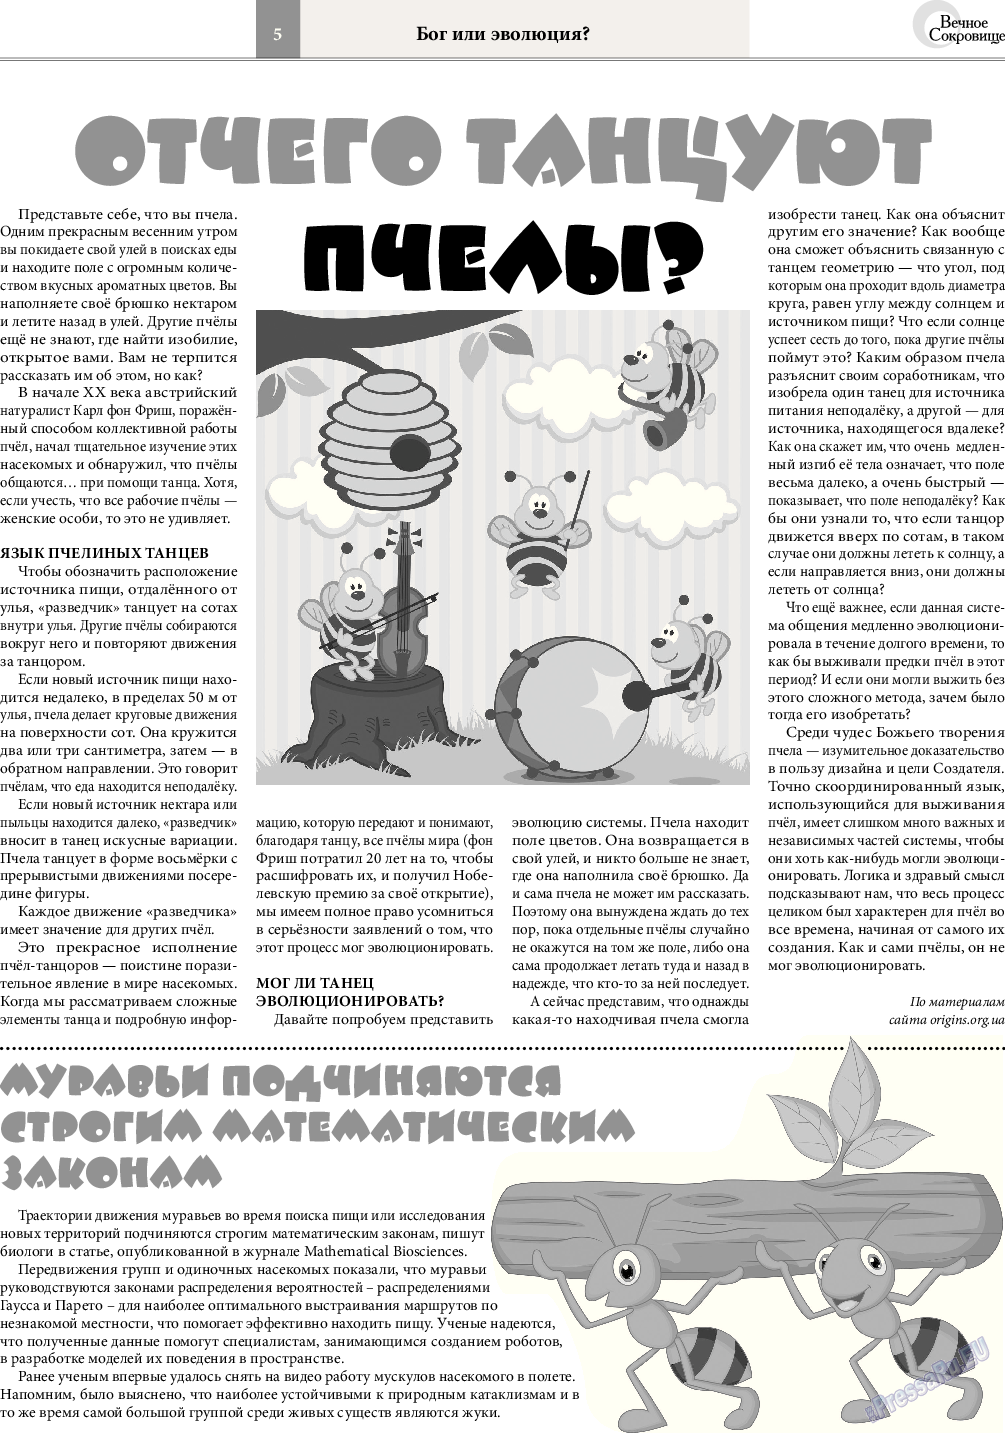 Вечное сокровище, газета. 2015 №3 стр.5